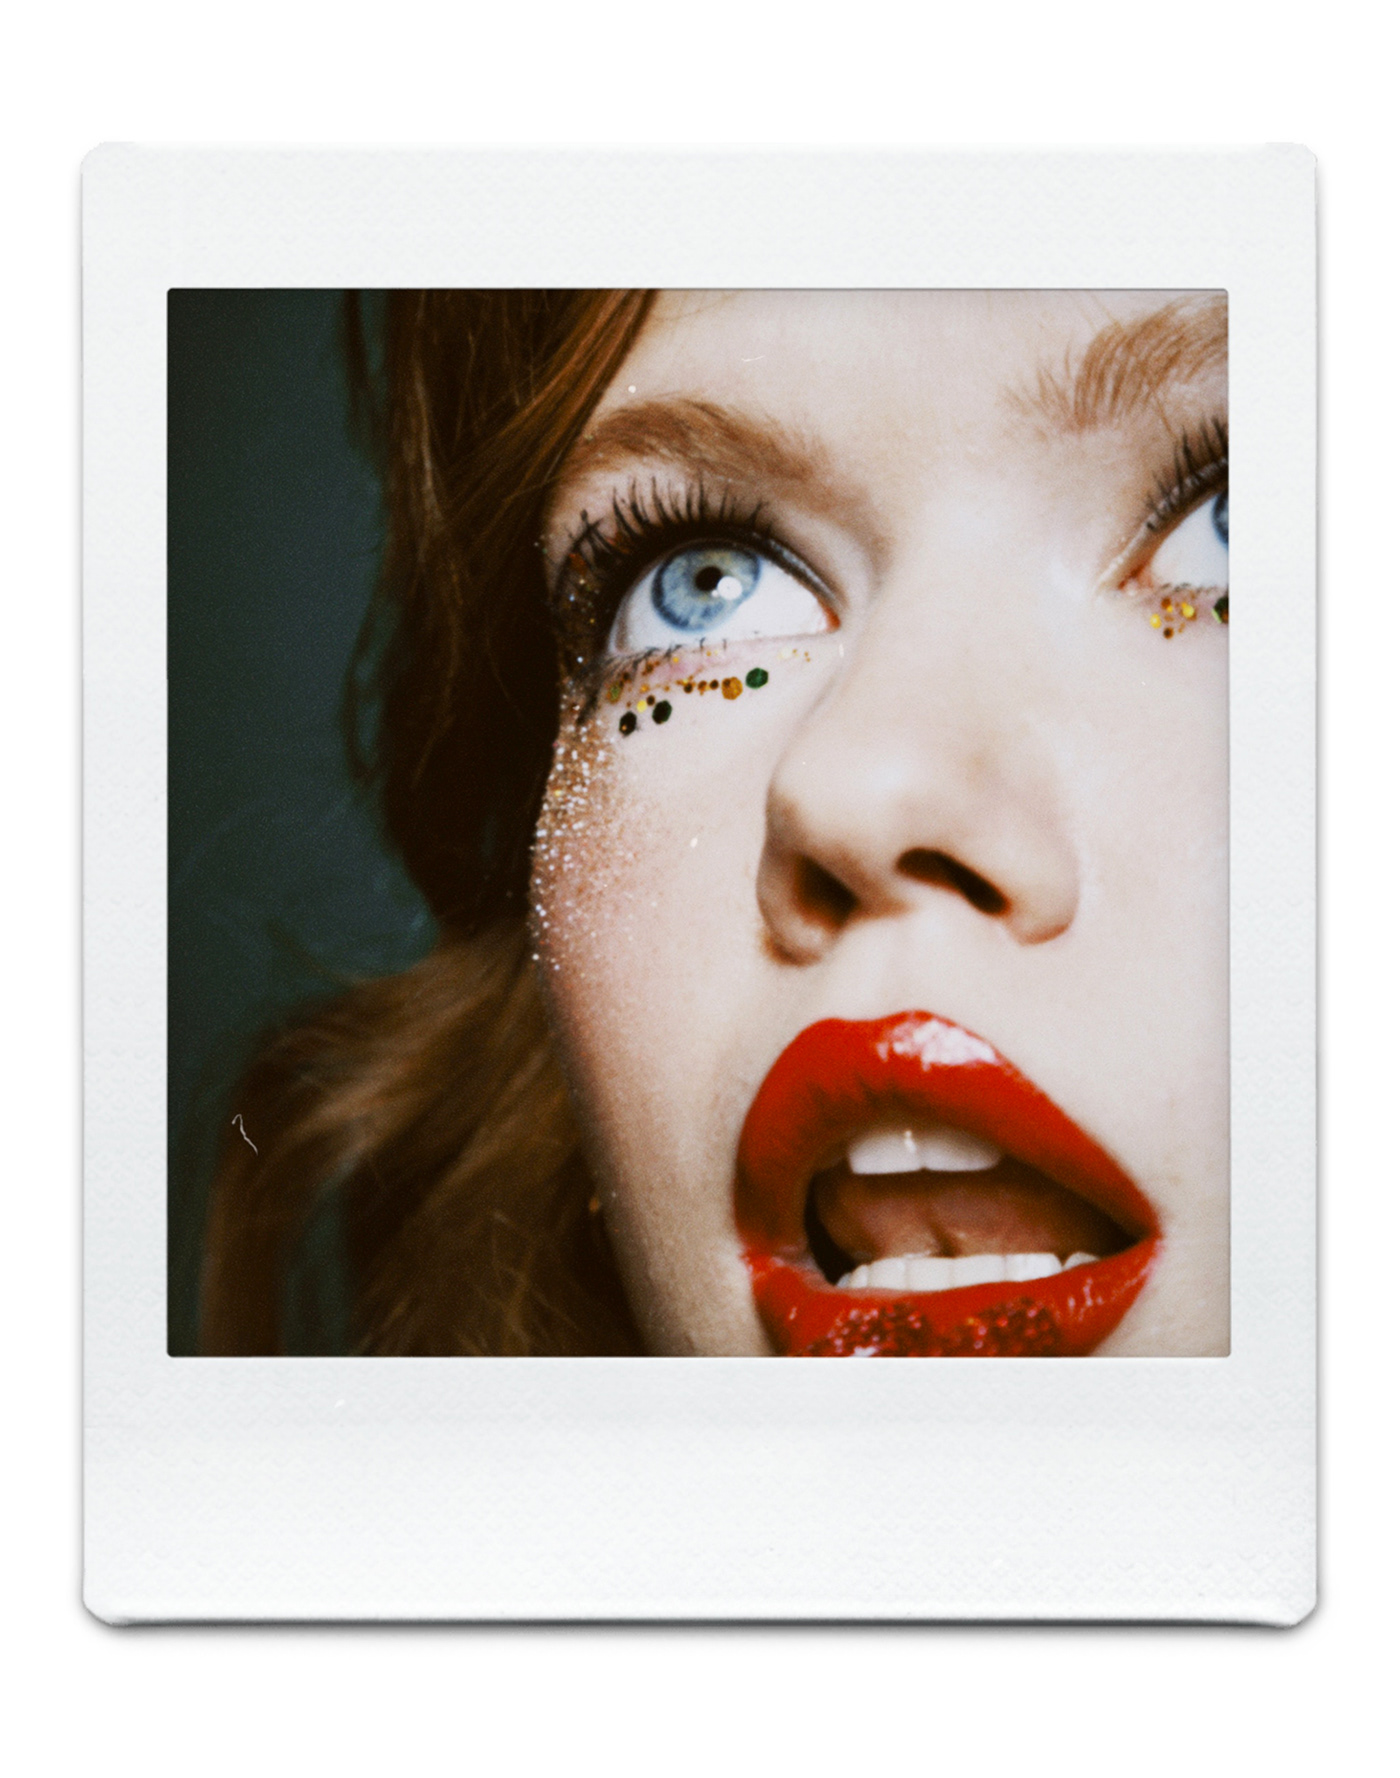 backstage beauty closeup editorial face makeup model photographer portrait retouch